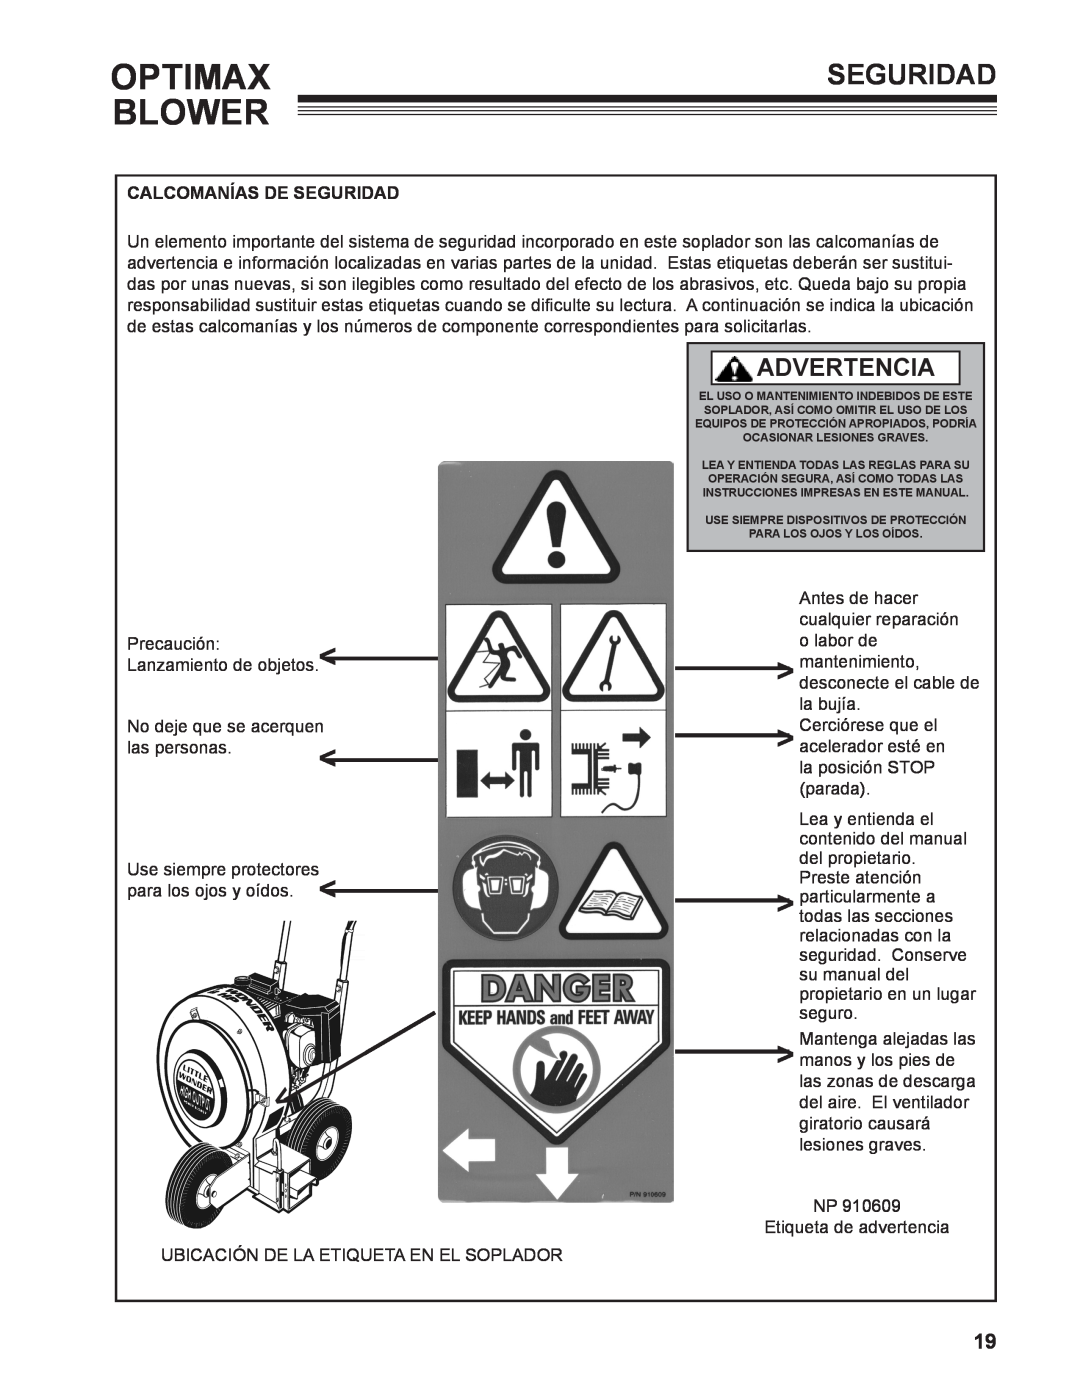 Little Wonder LB901-00-01 technical manual Optimax Blower, Advertencia, Calcomanías De Seguridad 